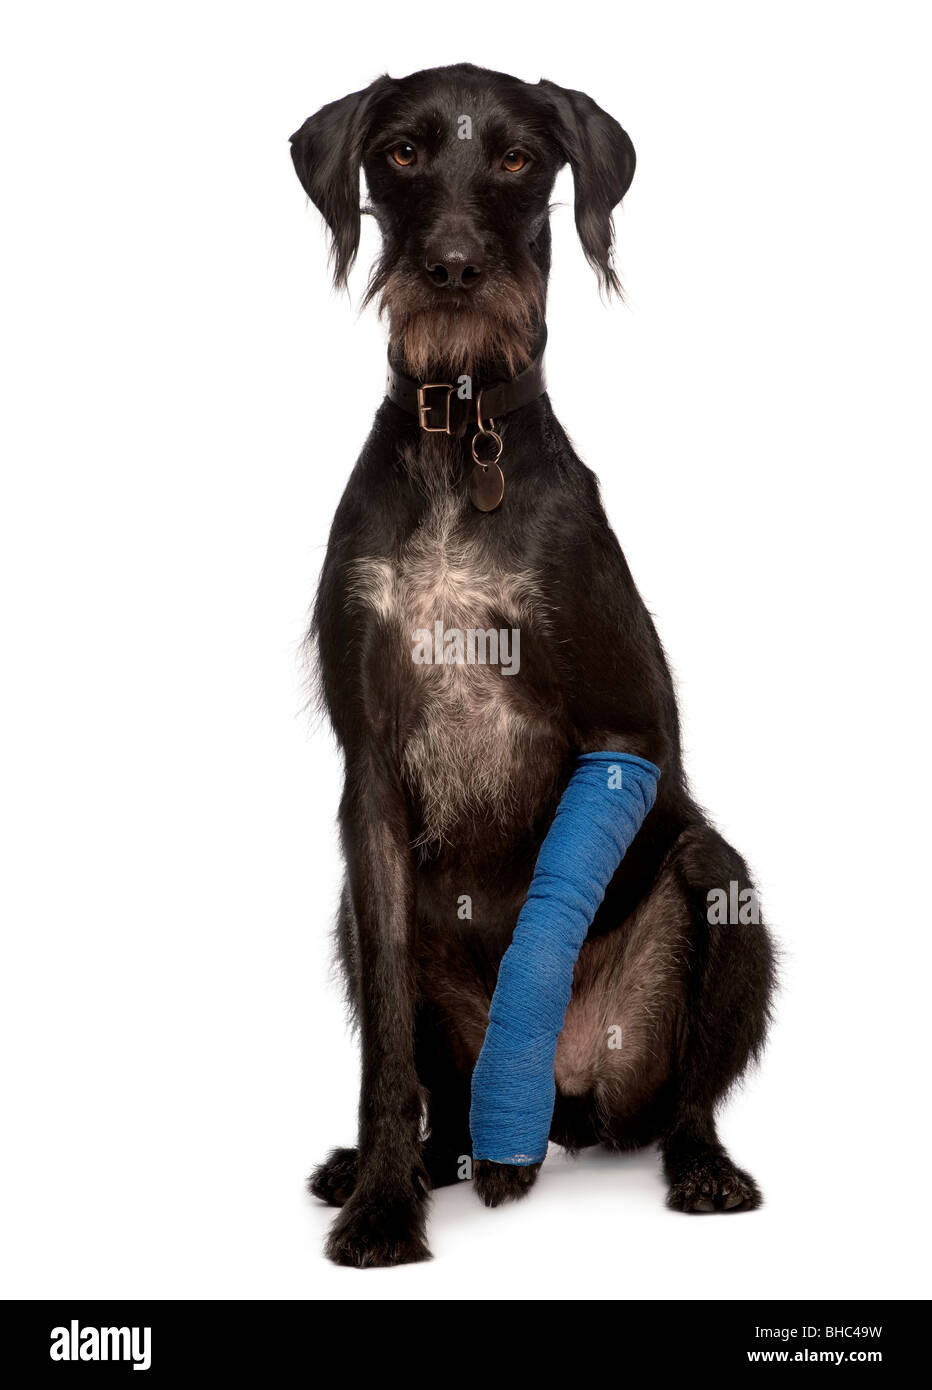 Perro perro con yeso en la pierna, de 3 años de edad, sentada delante de un fondo blanco Foto de stock